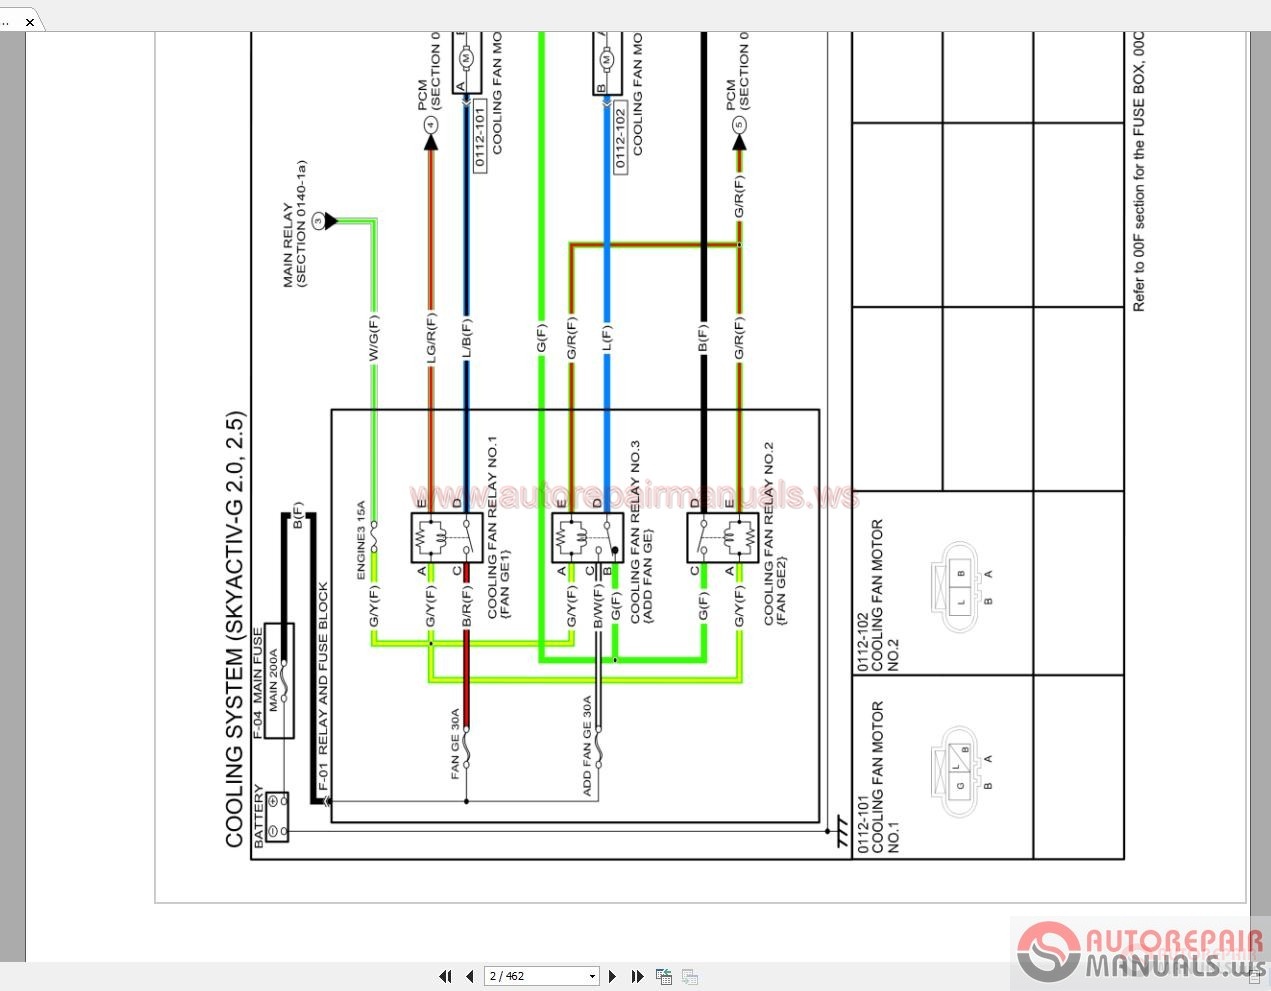 Mazda Cx 5 2016 4wd 2 0 2 5 Wiring Diagram Auto Repair Manual Forum Heavy Equipment Forums Download Repair Workshop Manual